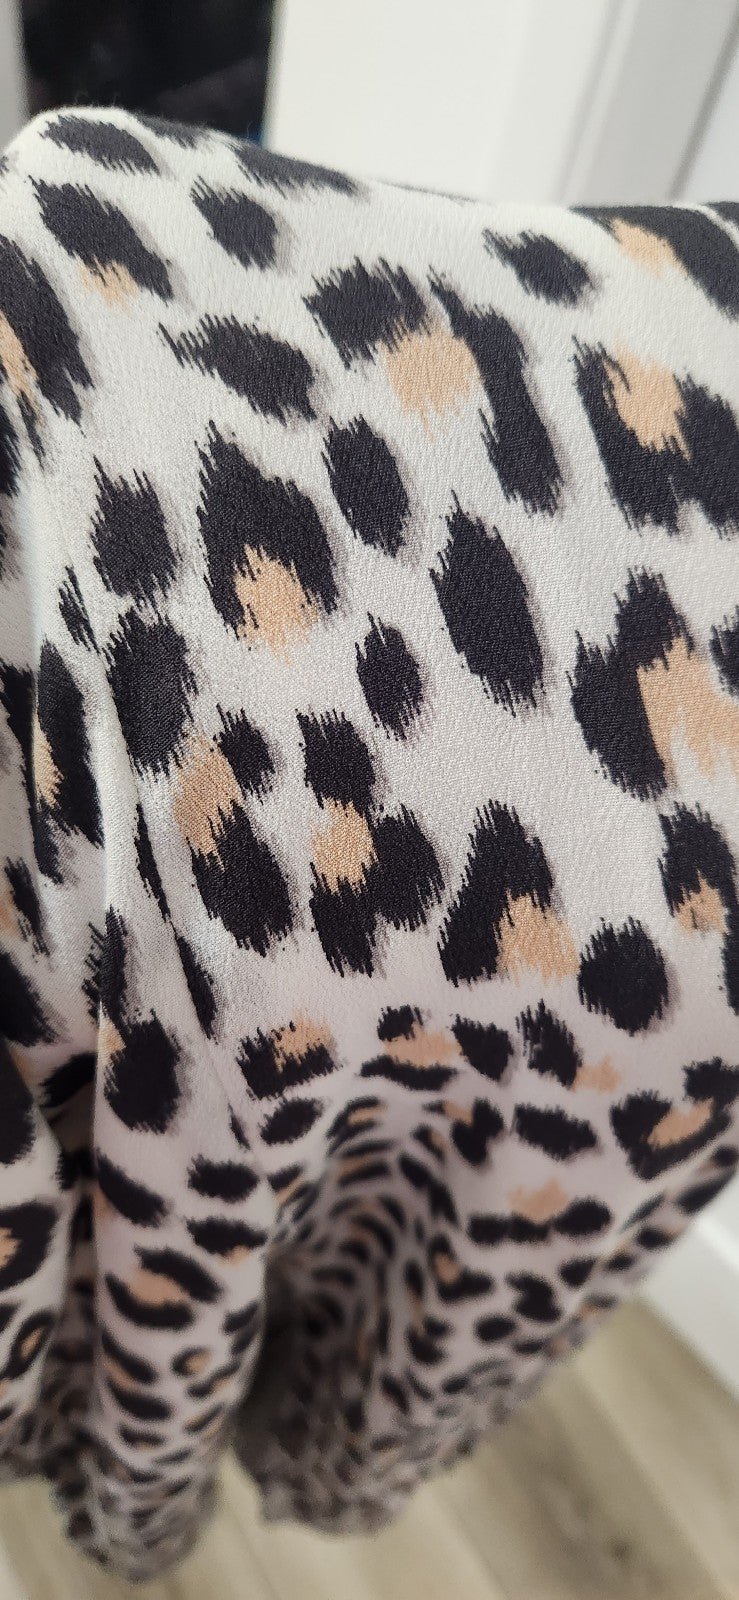 the Lowest price Loft Leopard Dress size 8 KAgtYrefz no tax